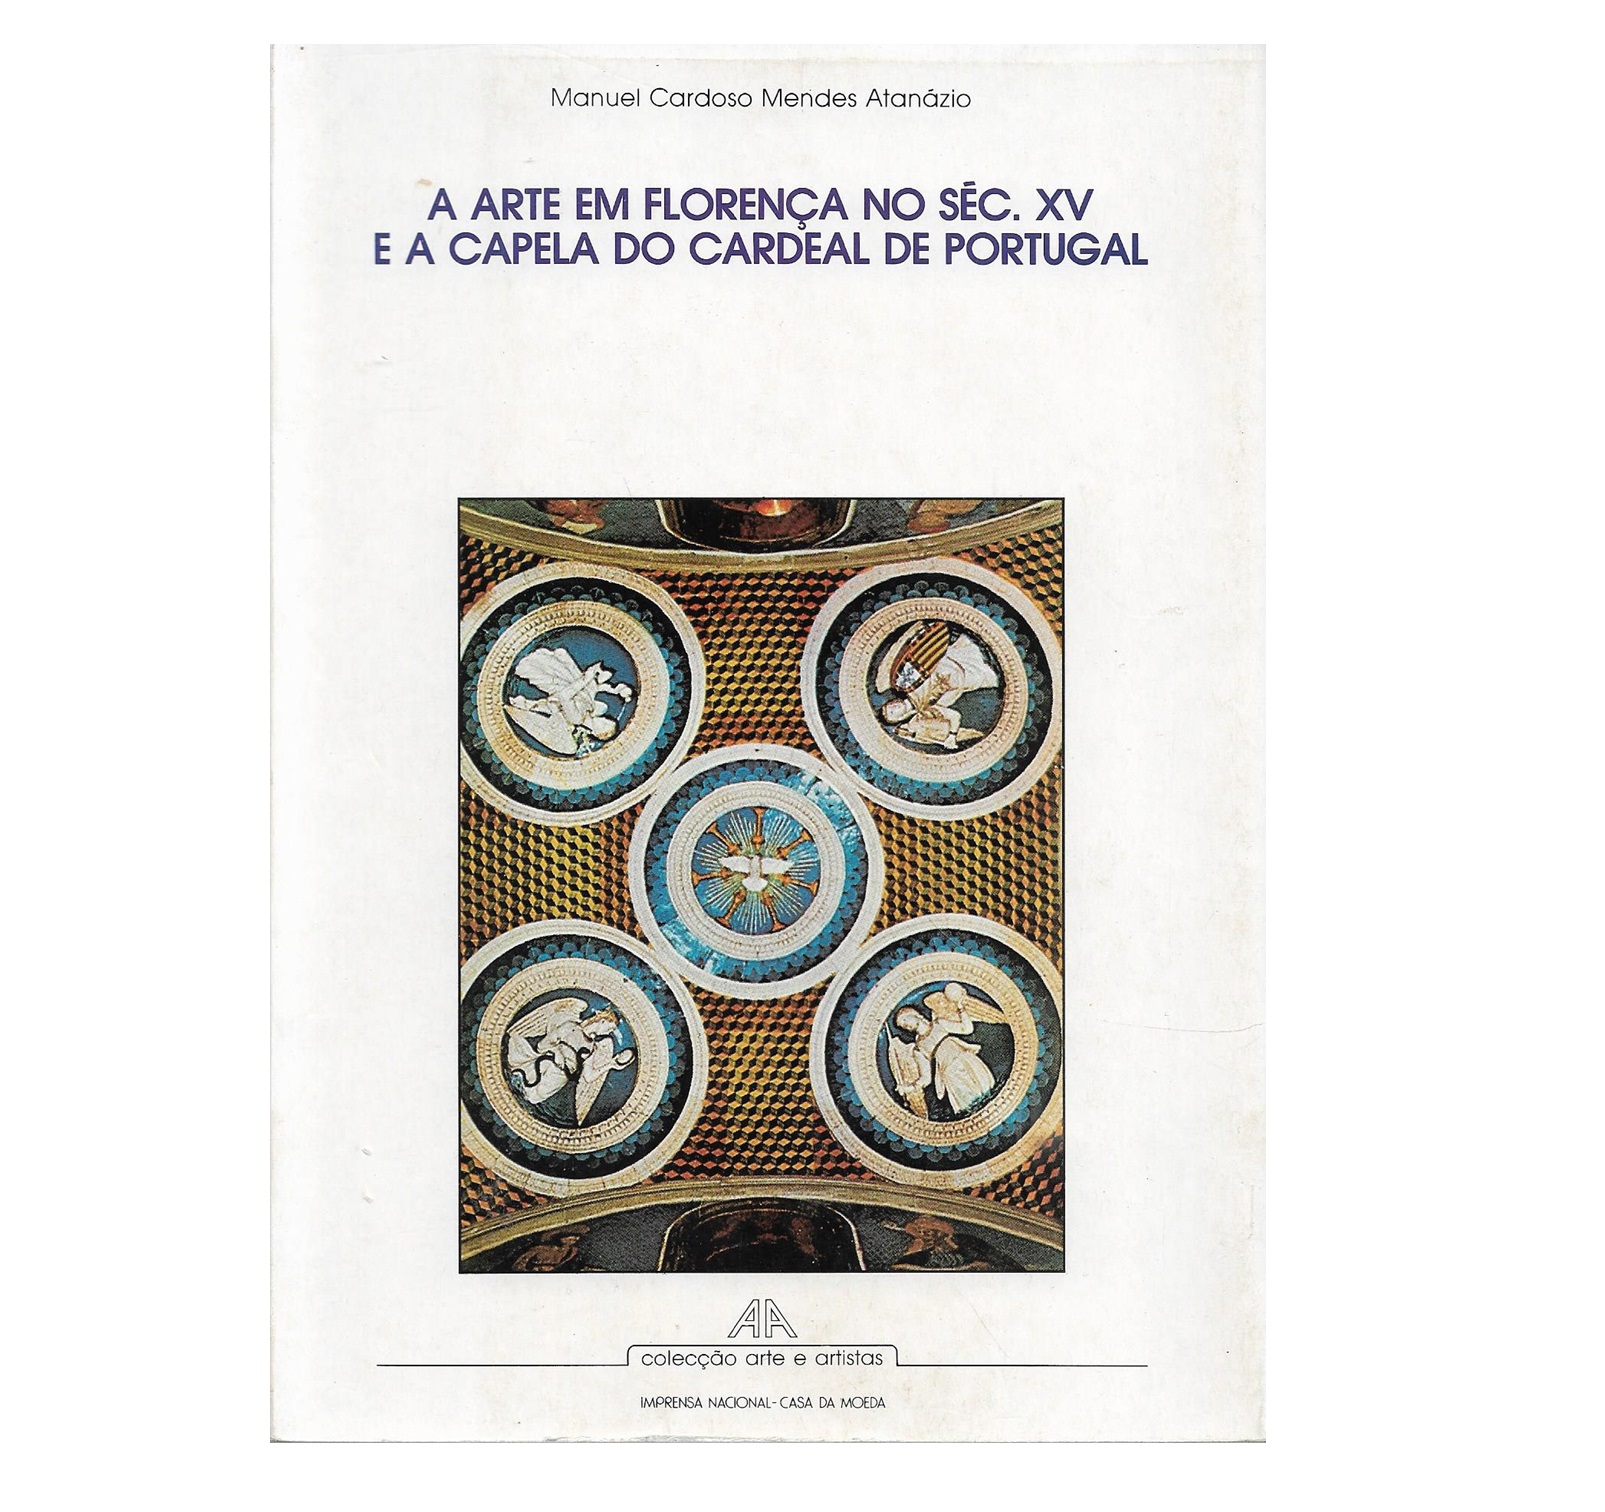 A ARTE EM FLORENÇA NO SÉC. XV E A CAPELA DO CARDEAL DE PORTUGAL